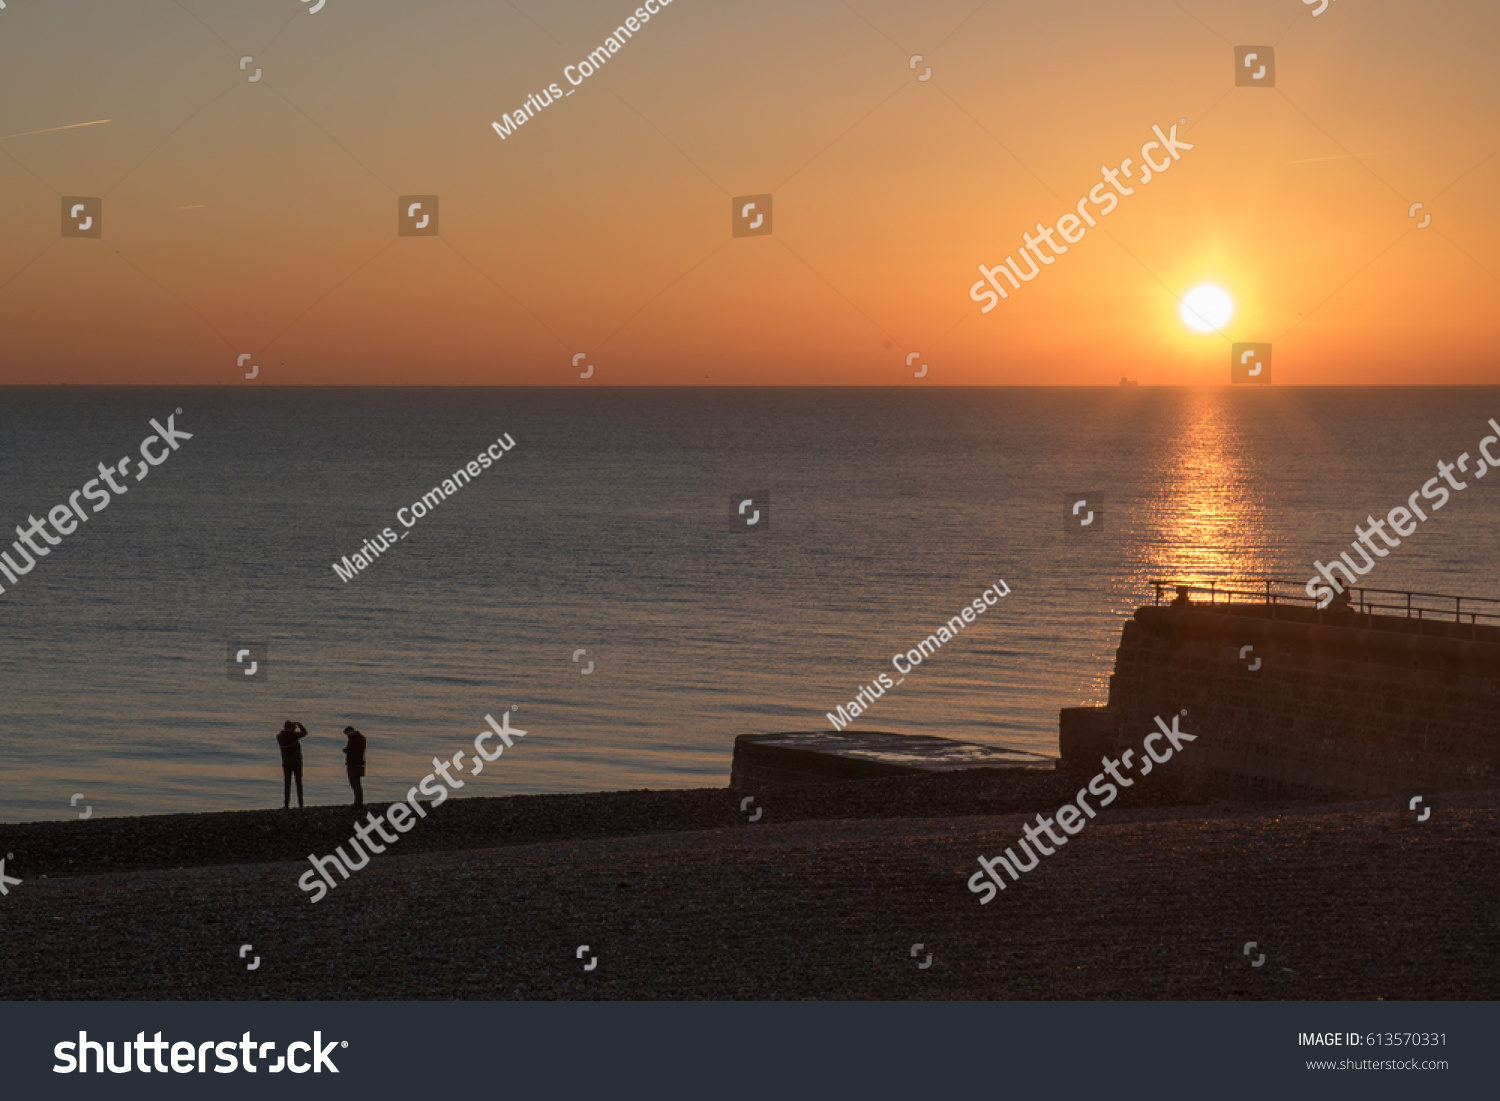 12/01/2016 Brighton, UK. Brighton beach at sunset #613570331